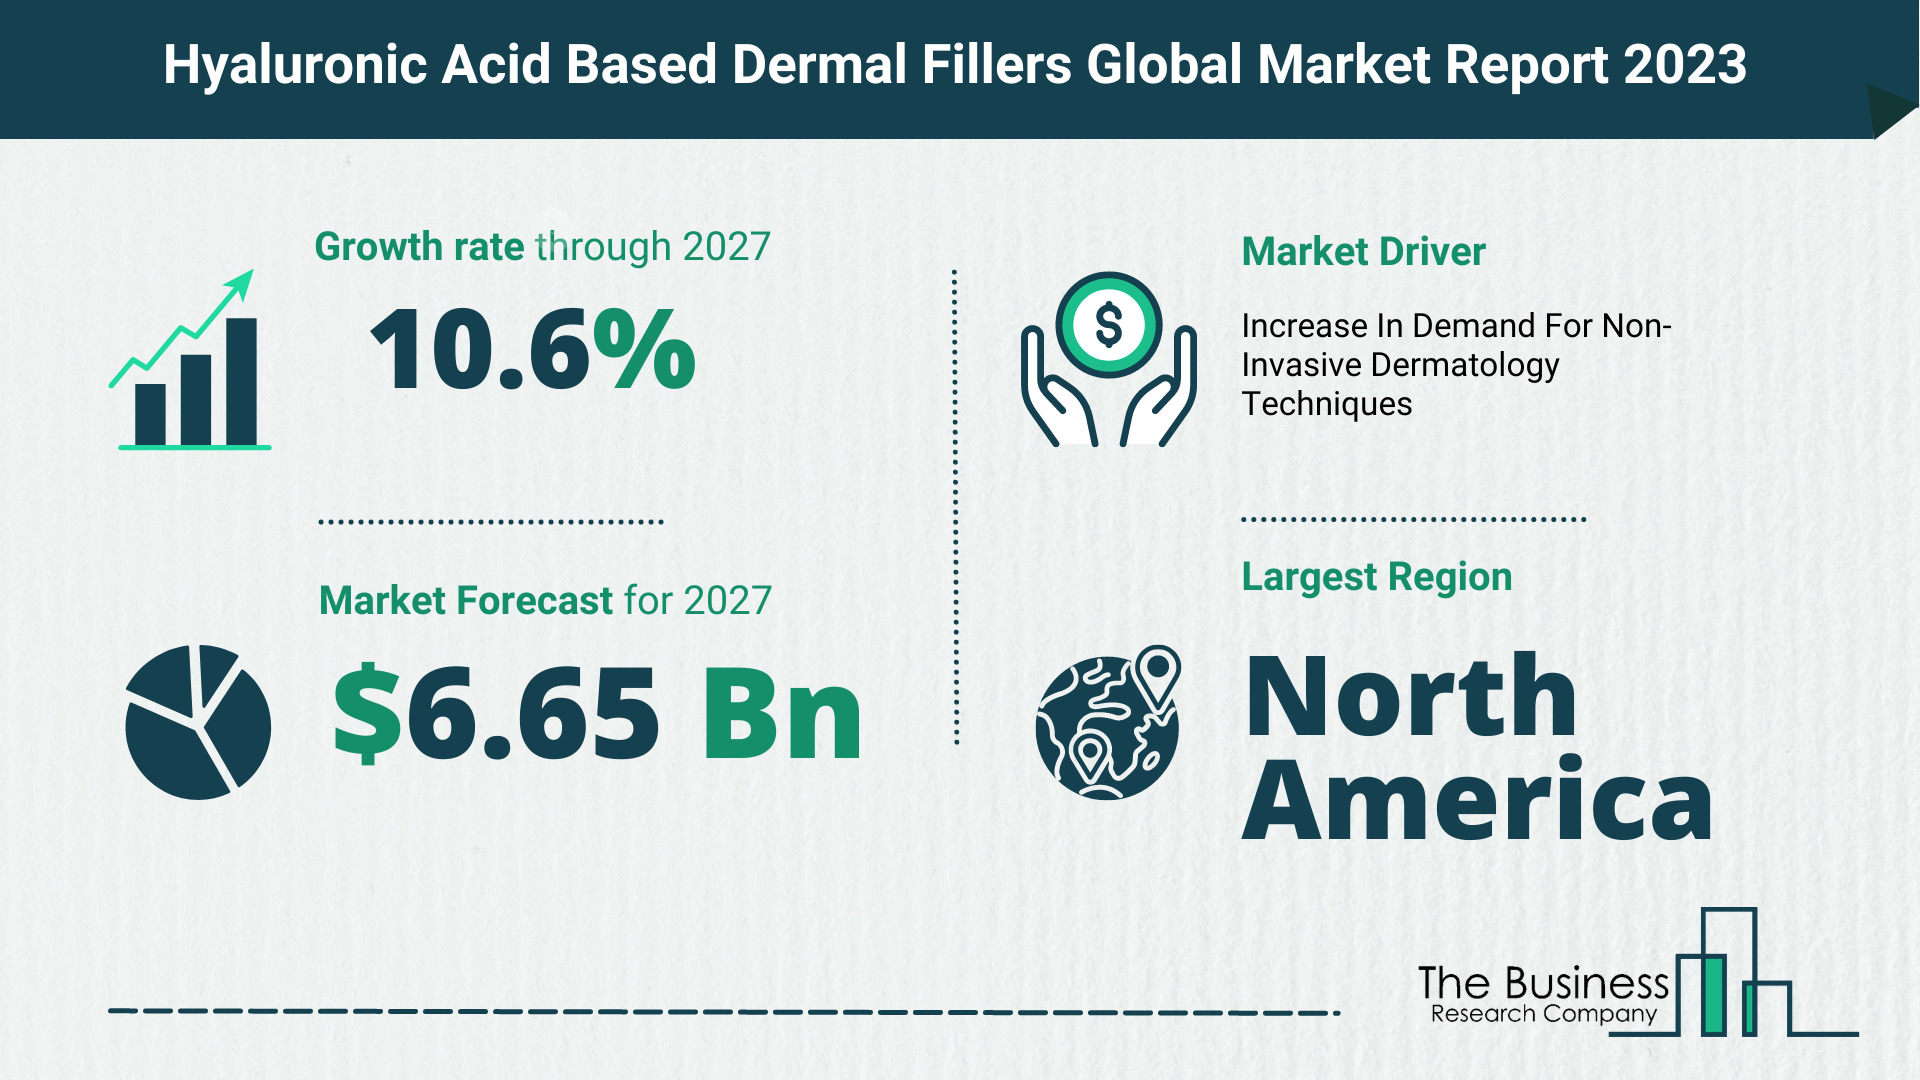 Global Hyaluronic Acid Based Dermal Fillers Market